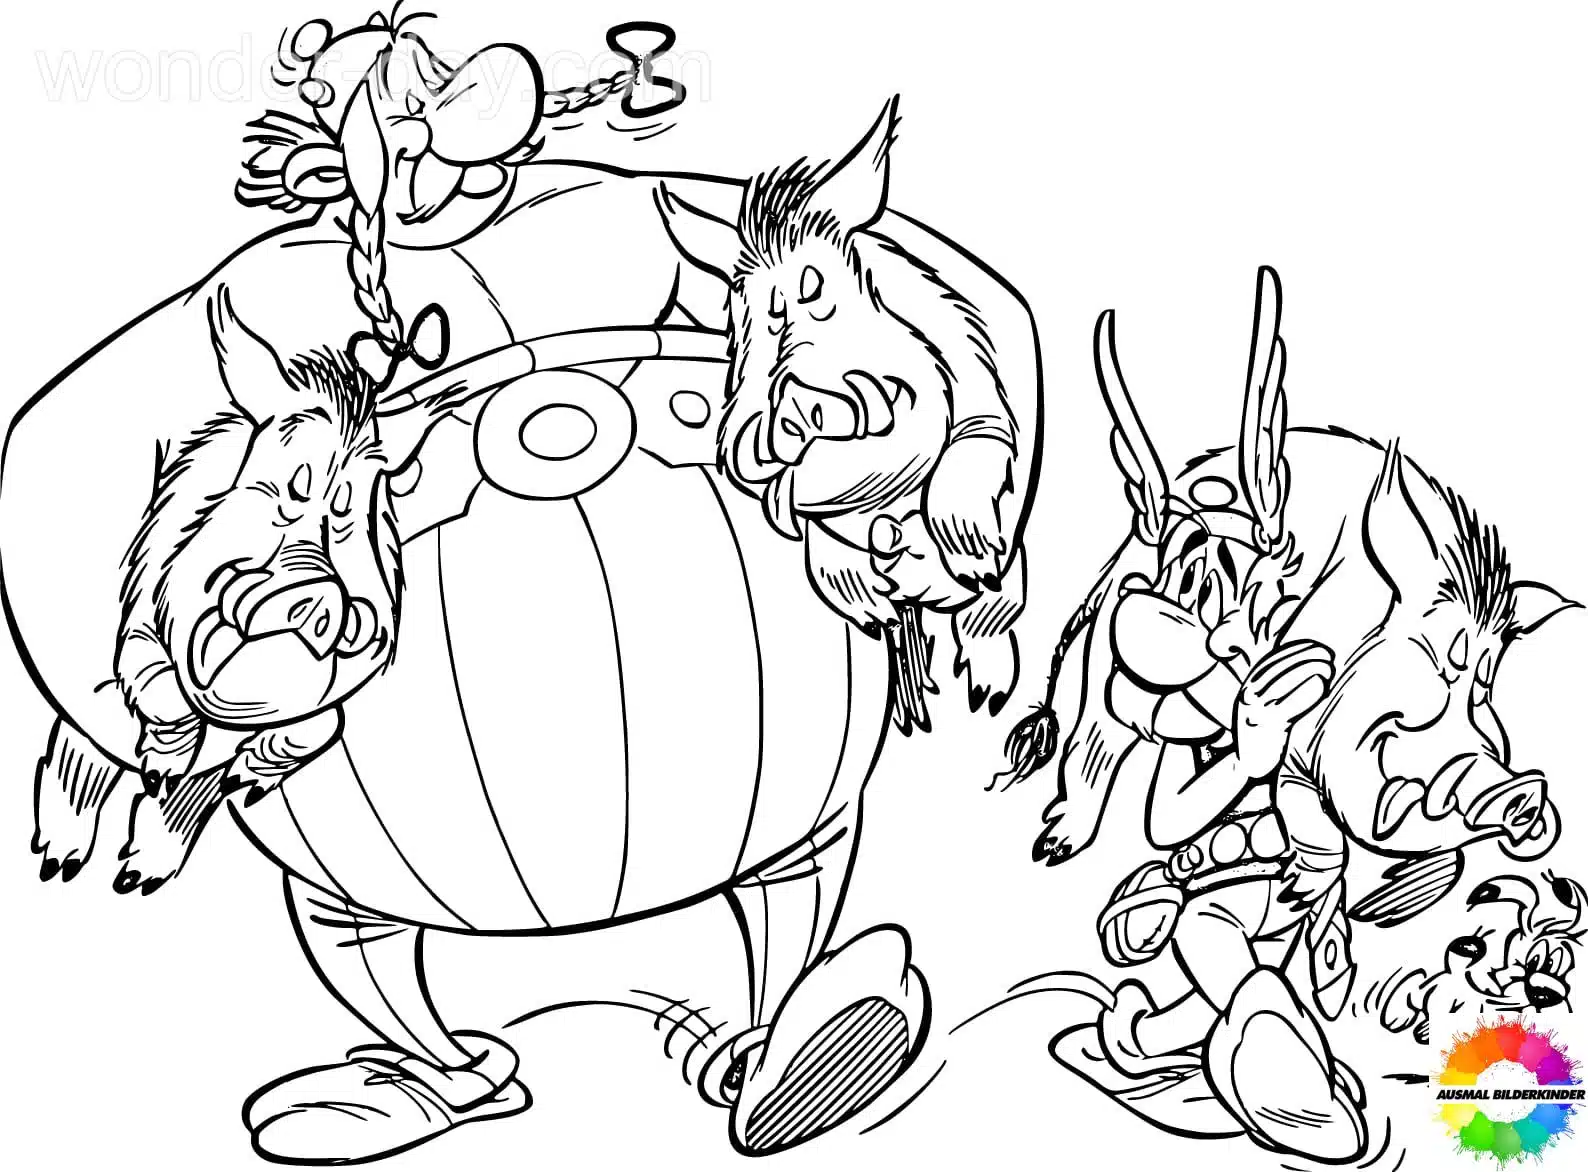 Asterix and Obelix 42